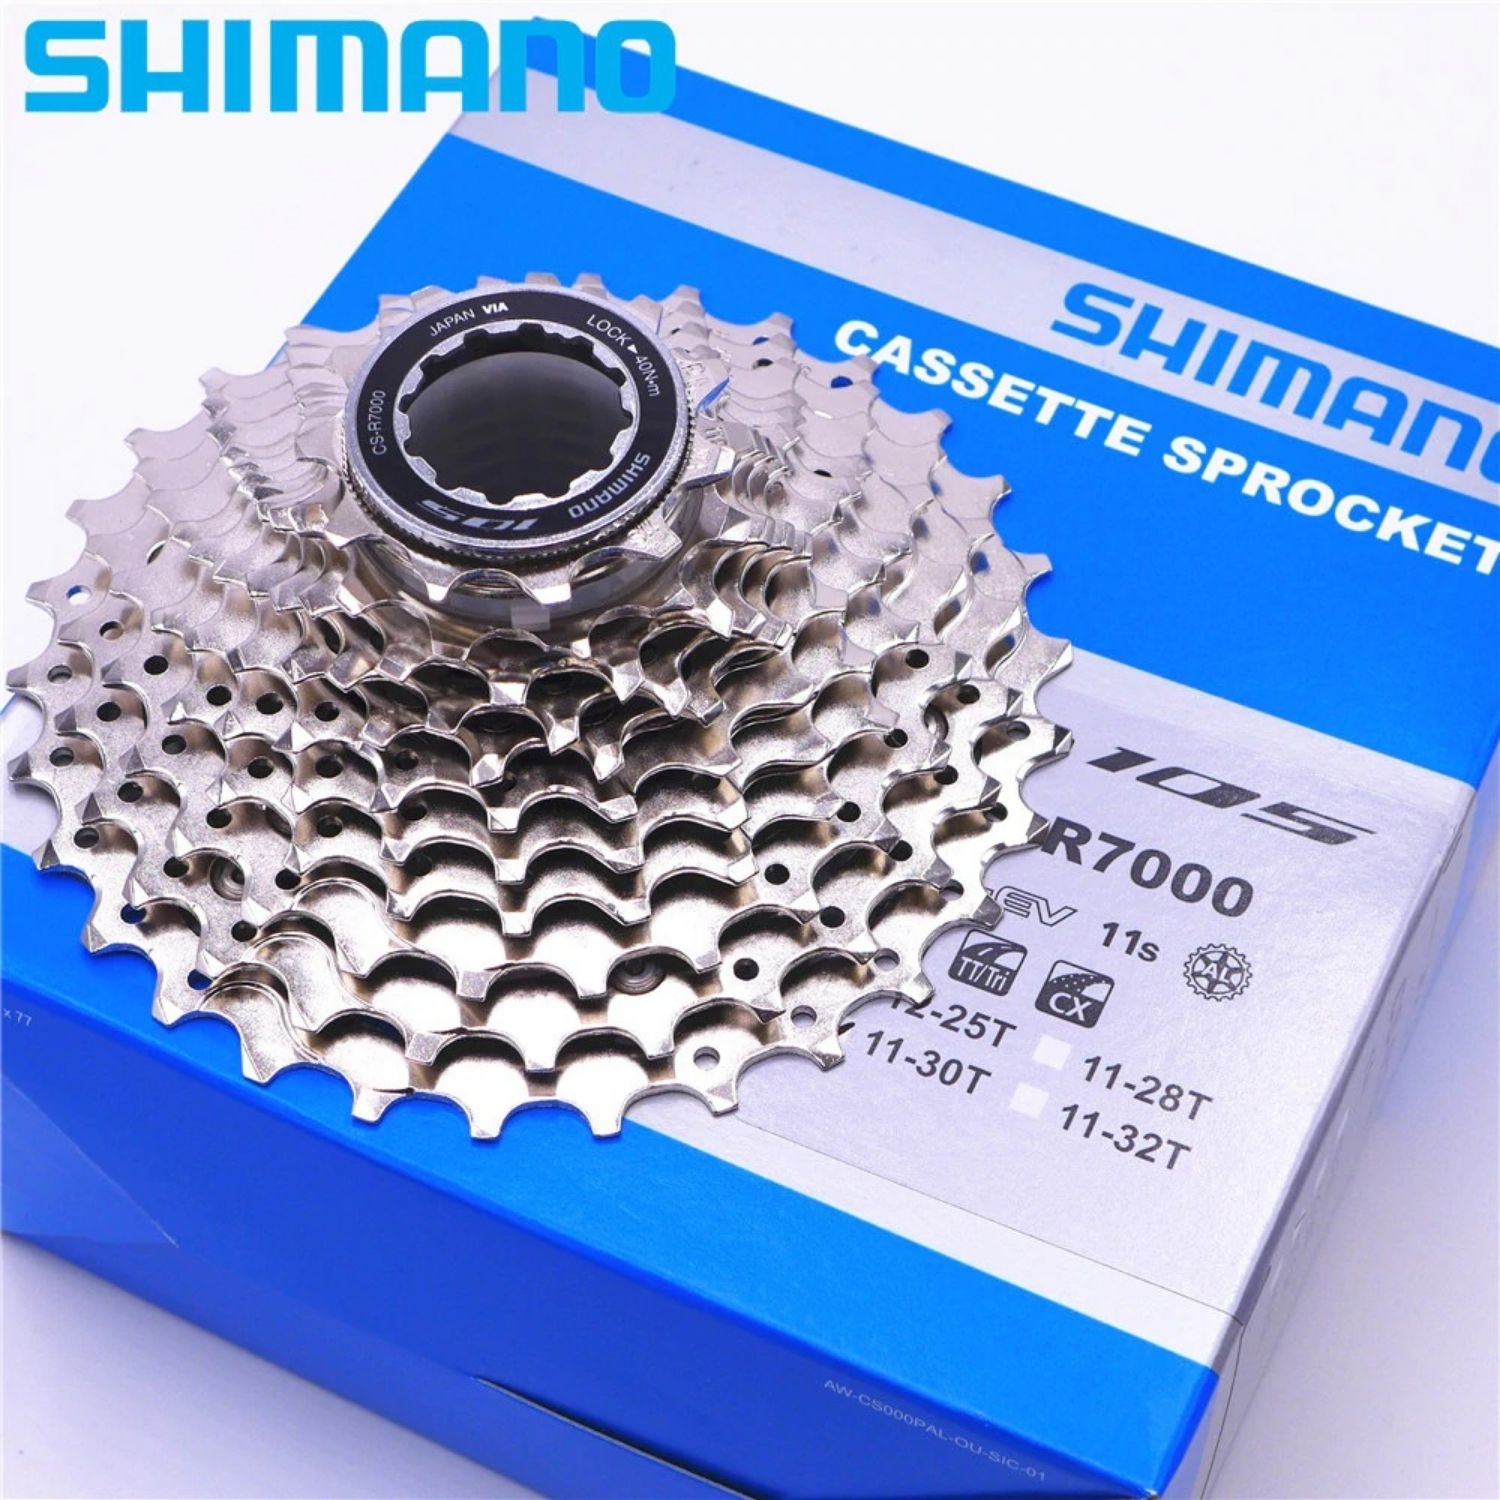 Shimano (R7000) 105 11 Spd HG Cassette